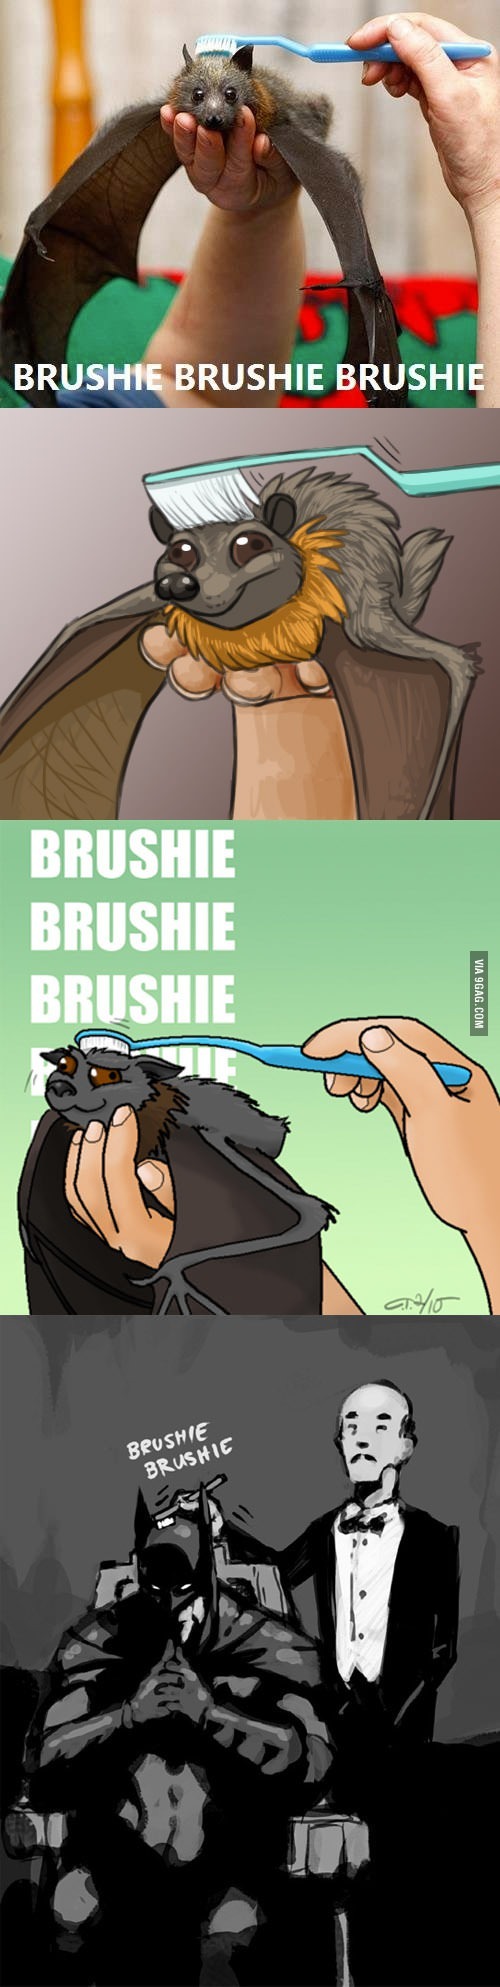 bat brush - meme